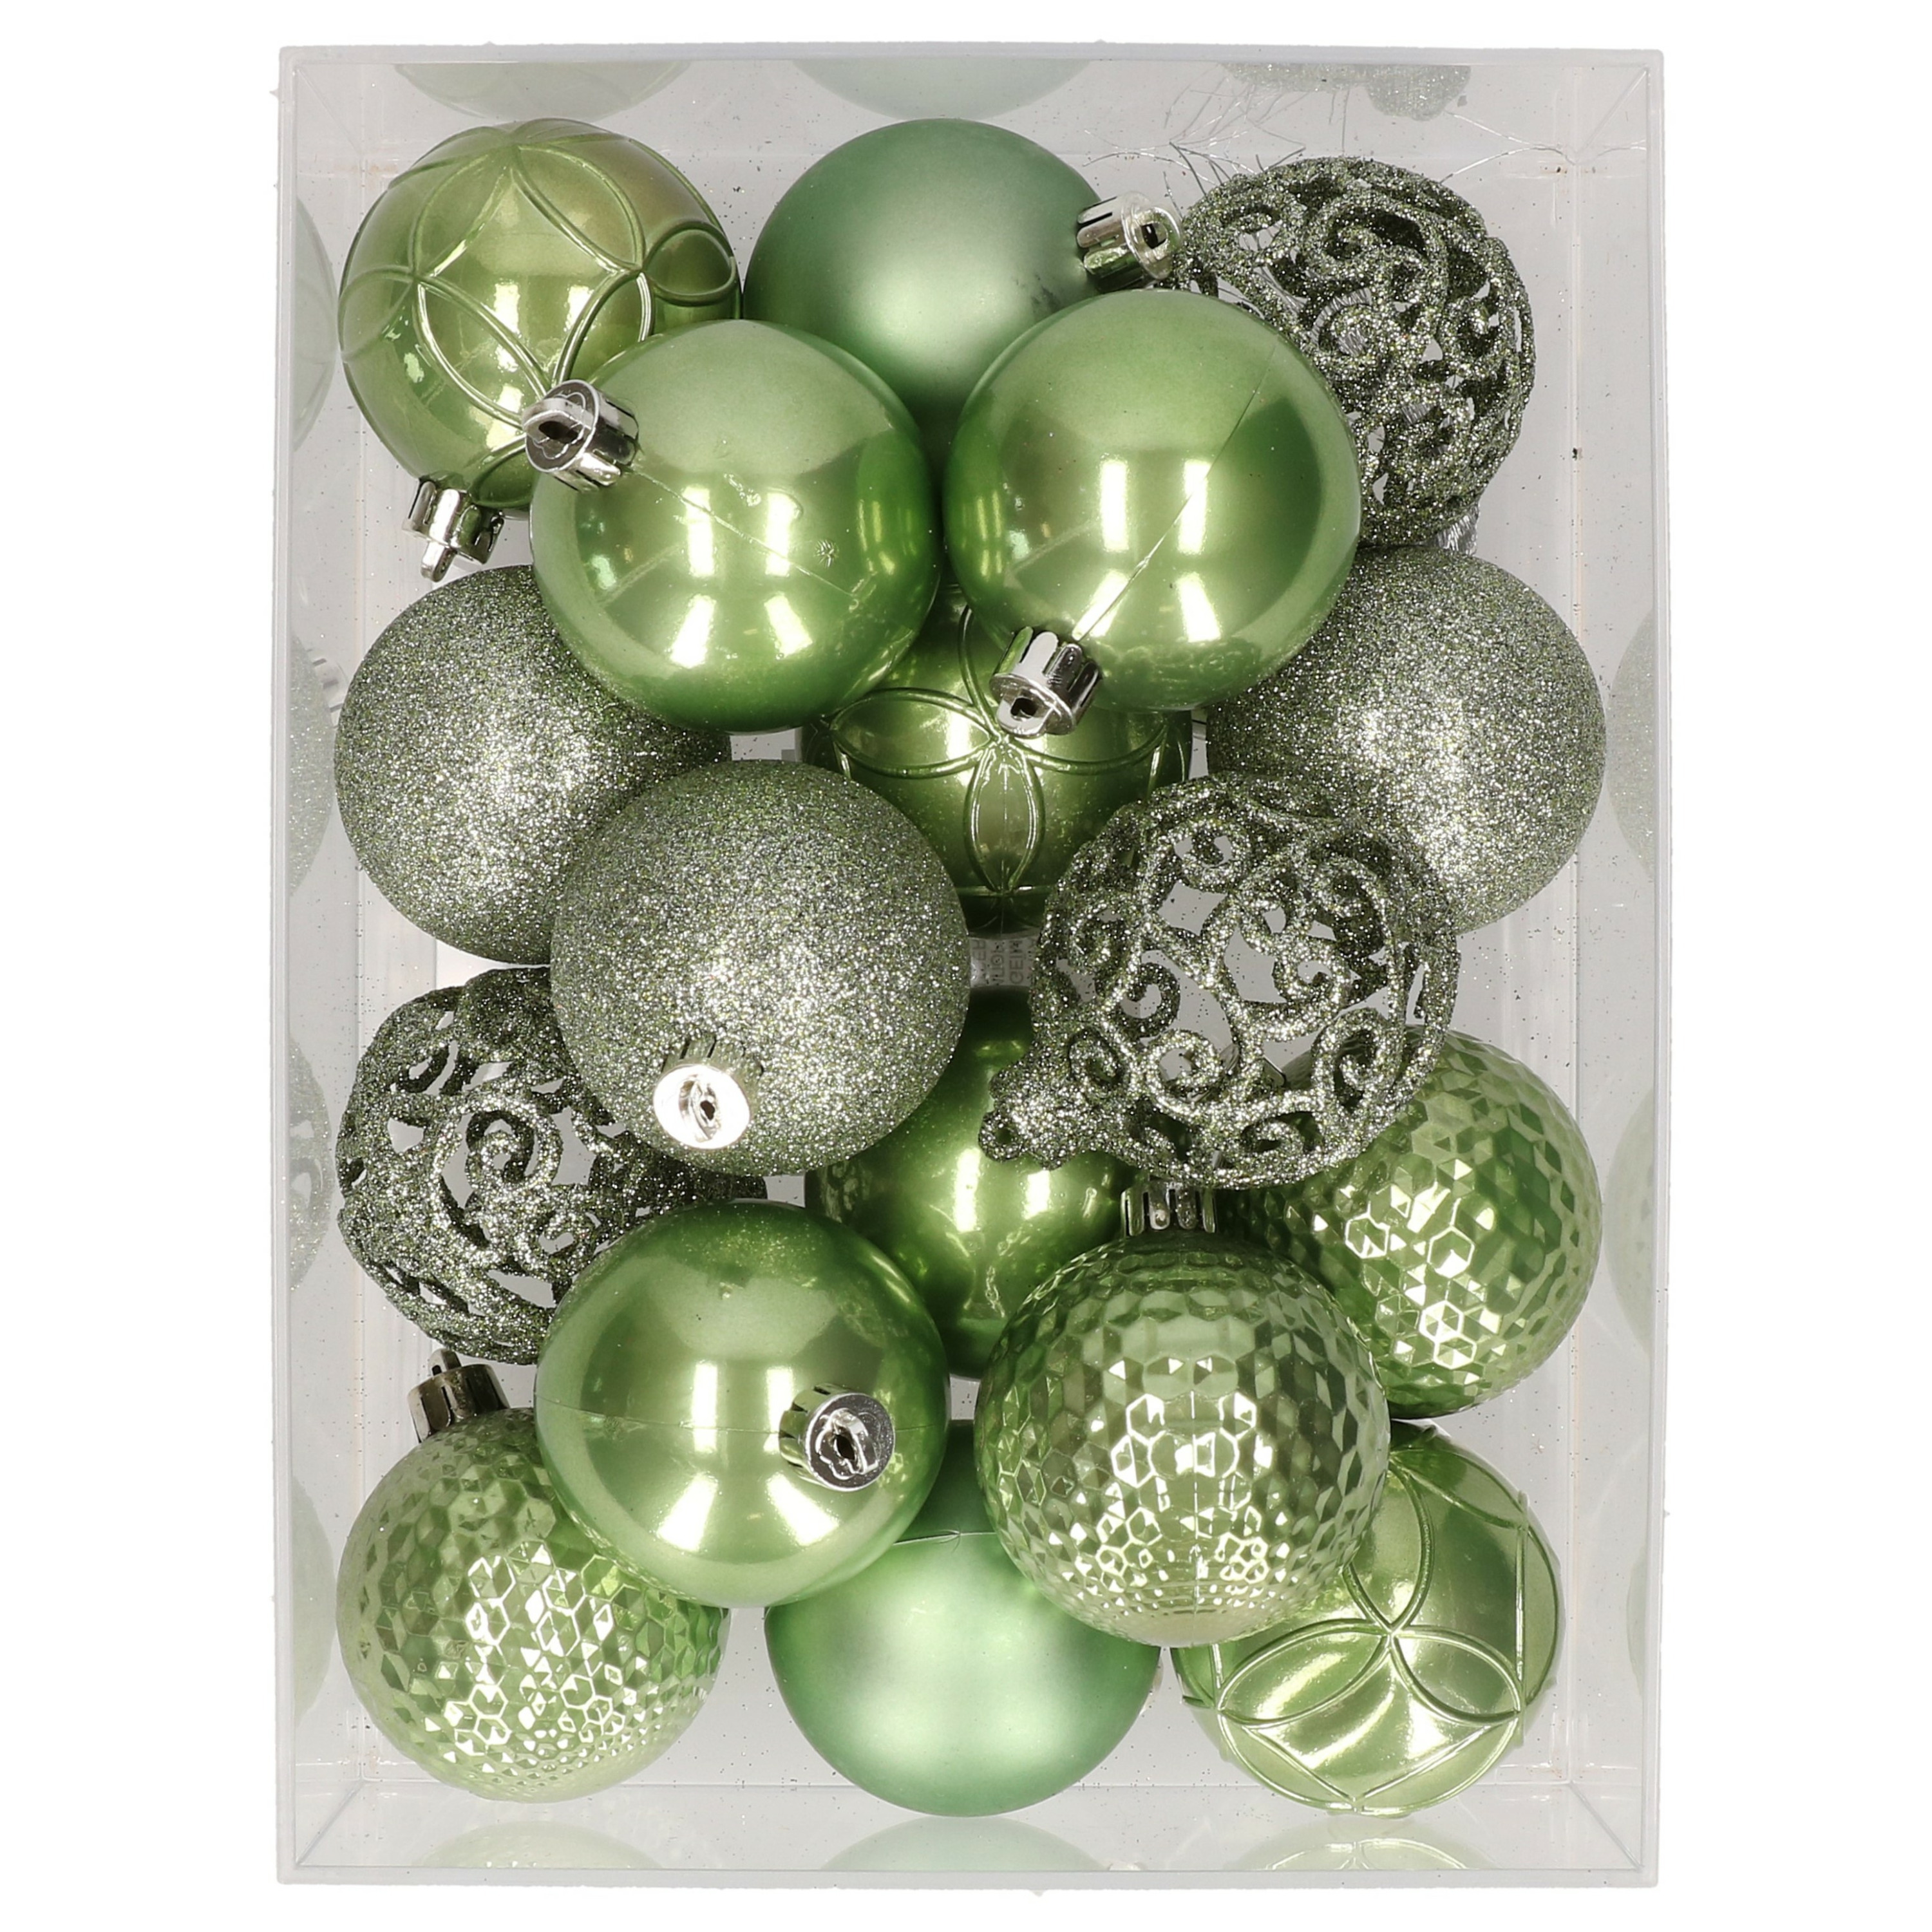 37x stuks kunststof kerstballen lichtgroen 6 cm glans-mat-glitter mix